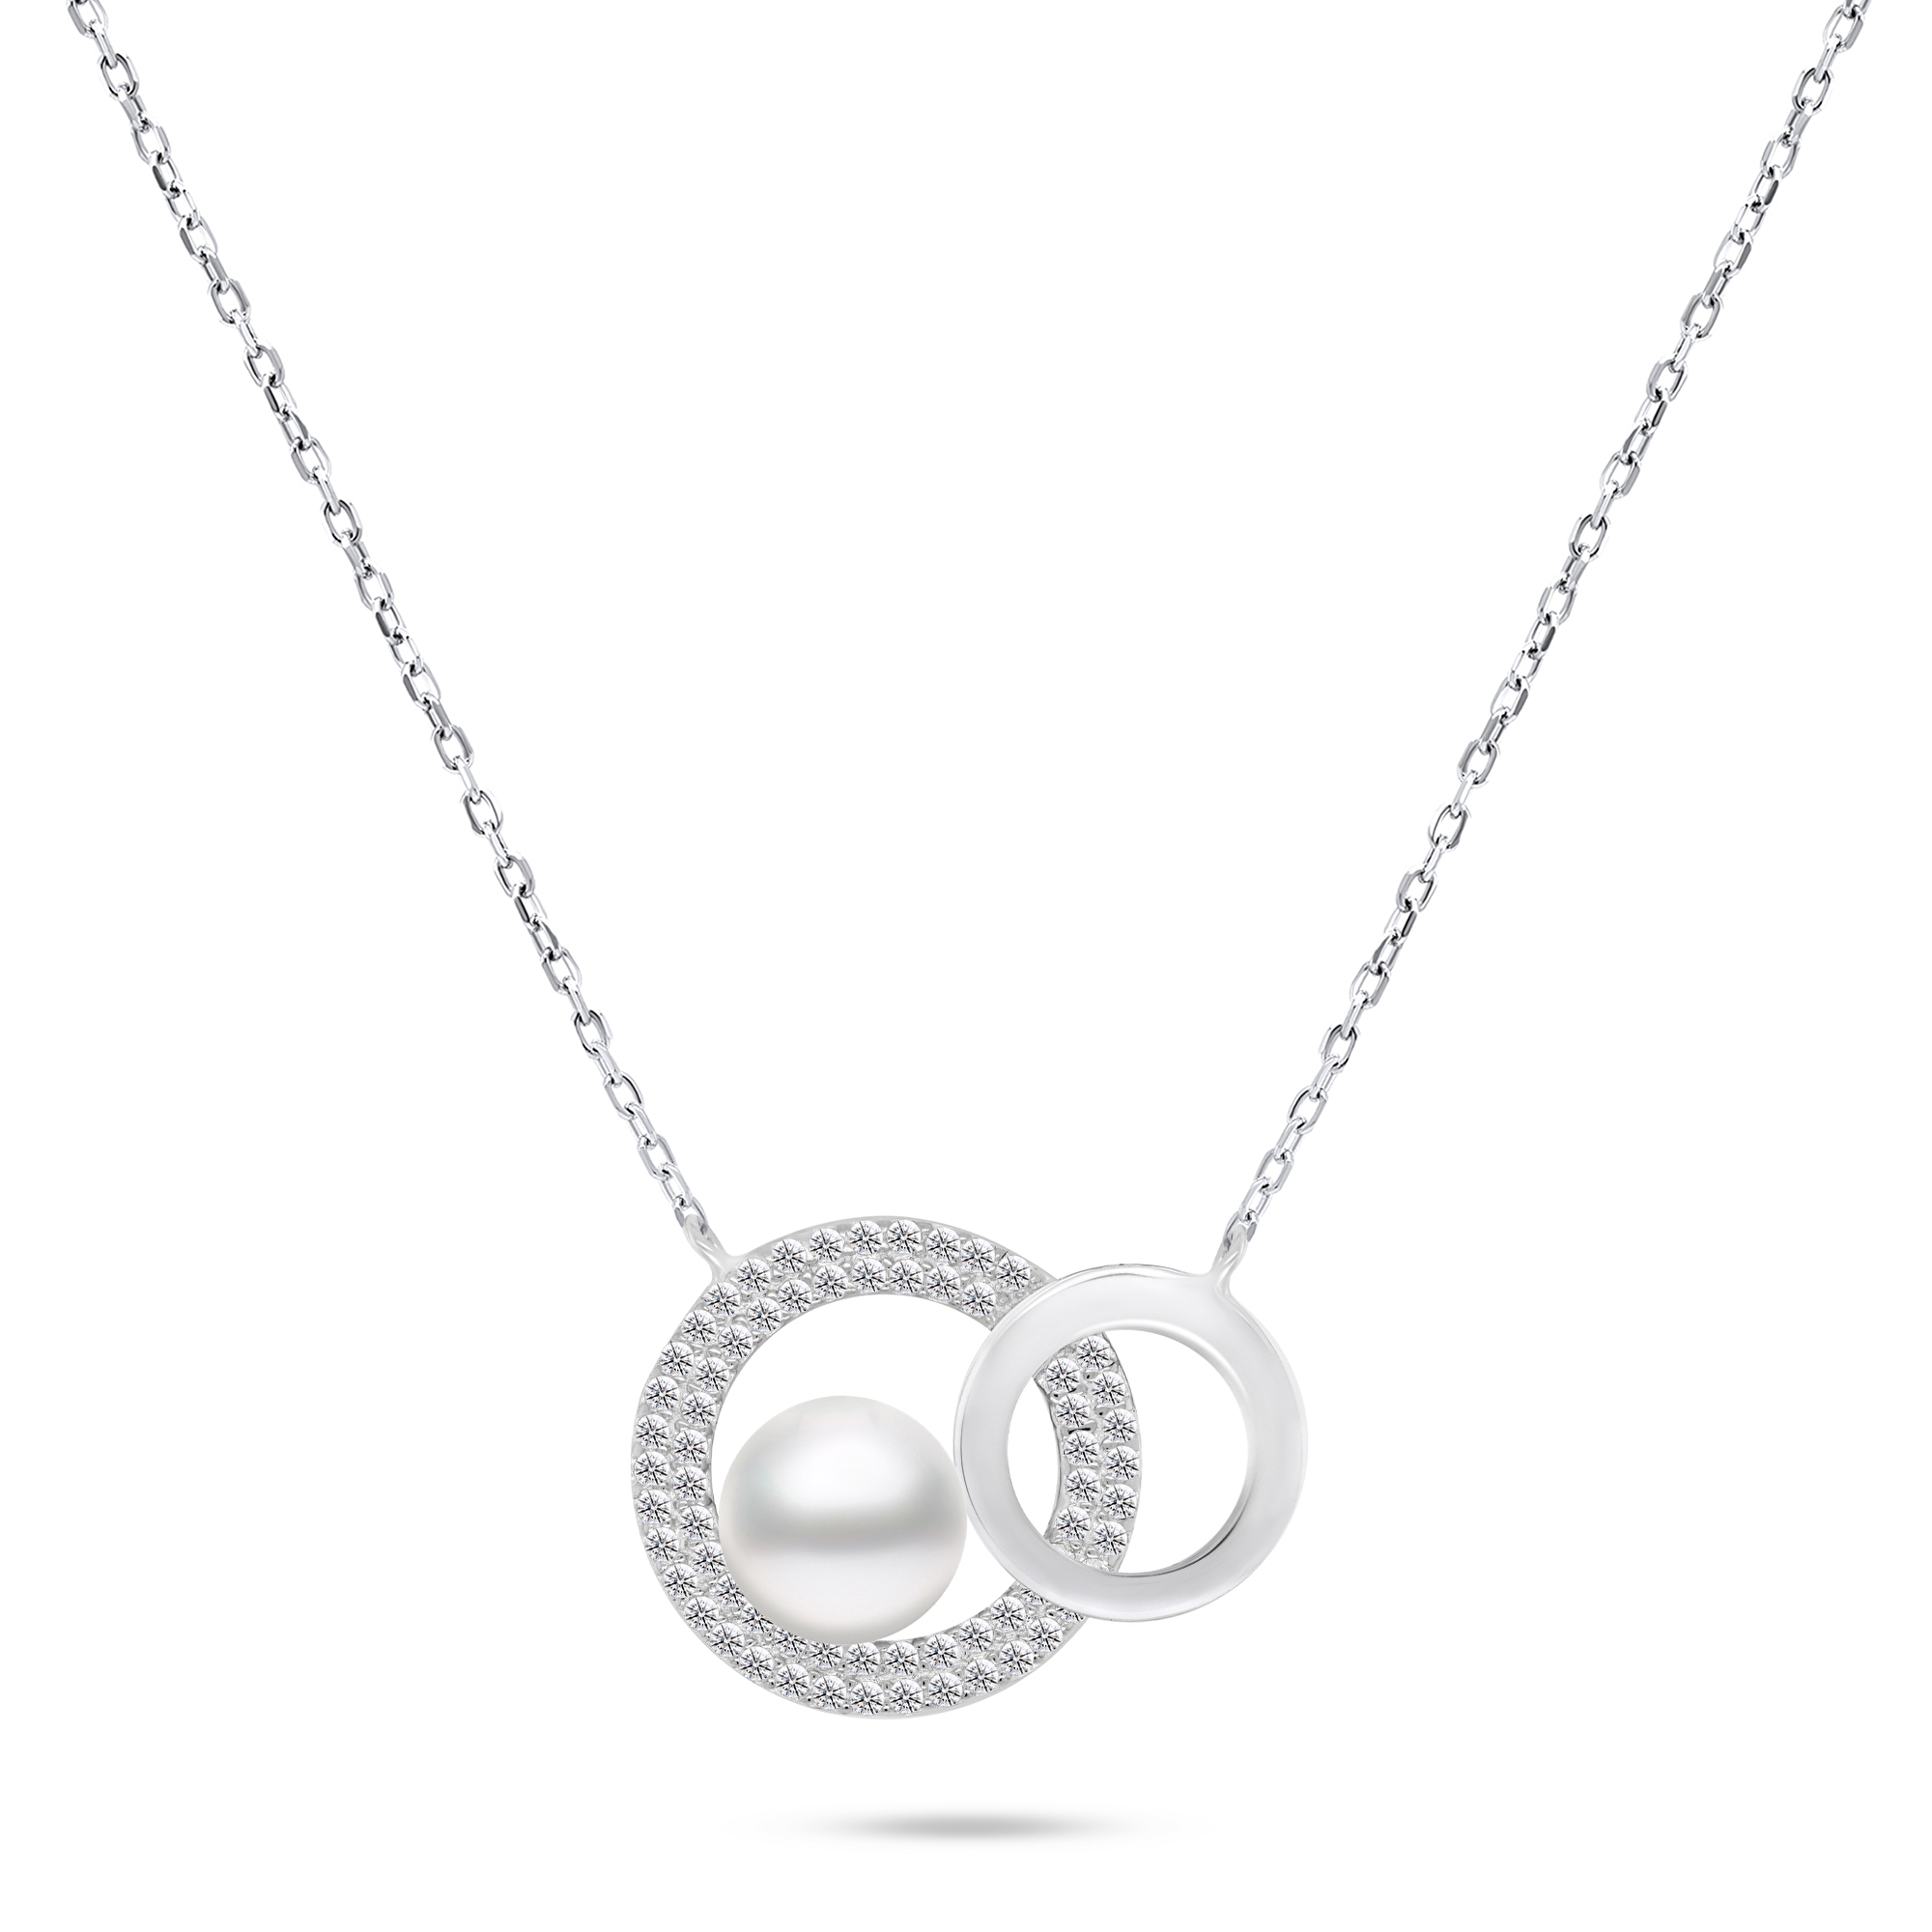 Brilio Silver Půvabný stříbrný náhrdelník s pravou perlou NCL65W